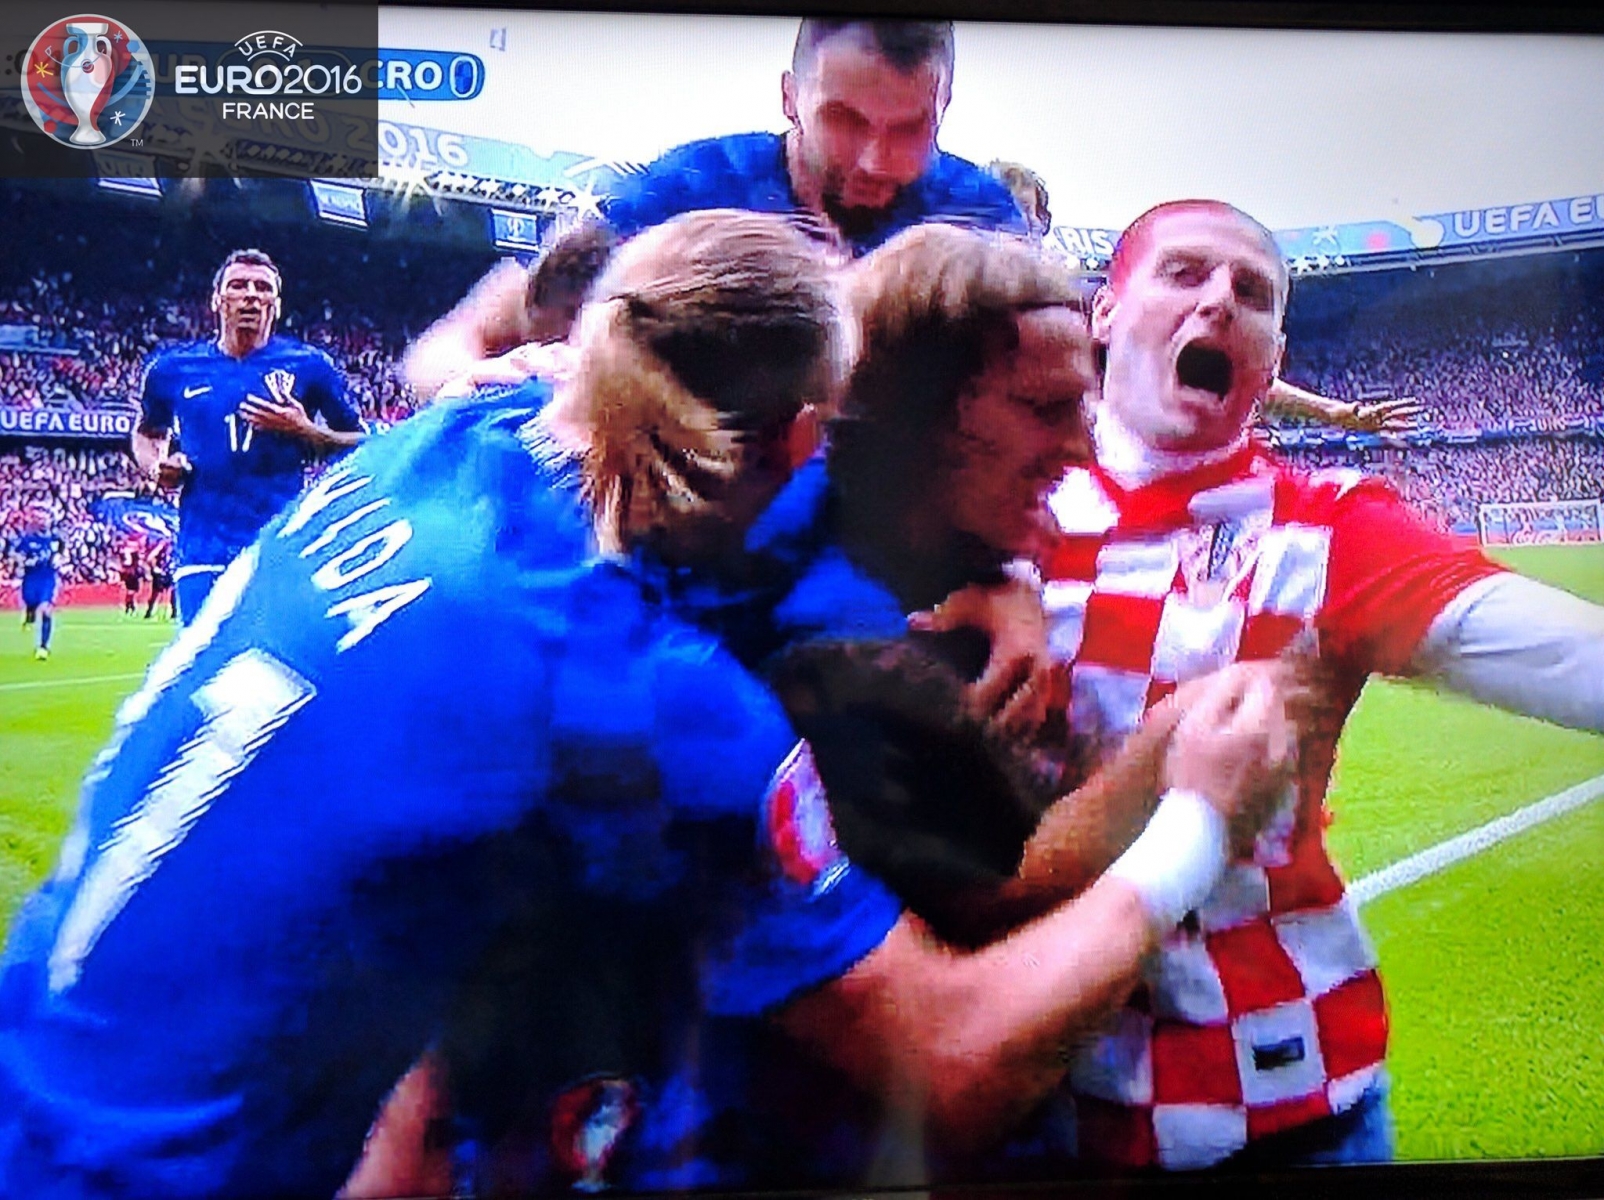 Ceci n'est pas une photo retouchée. C'est bel et bien un supporter avec les joueurs croates.